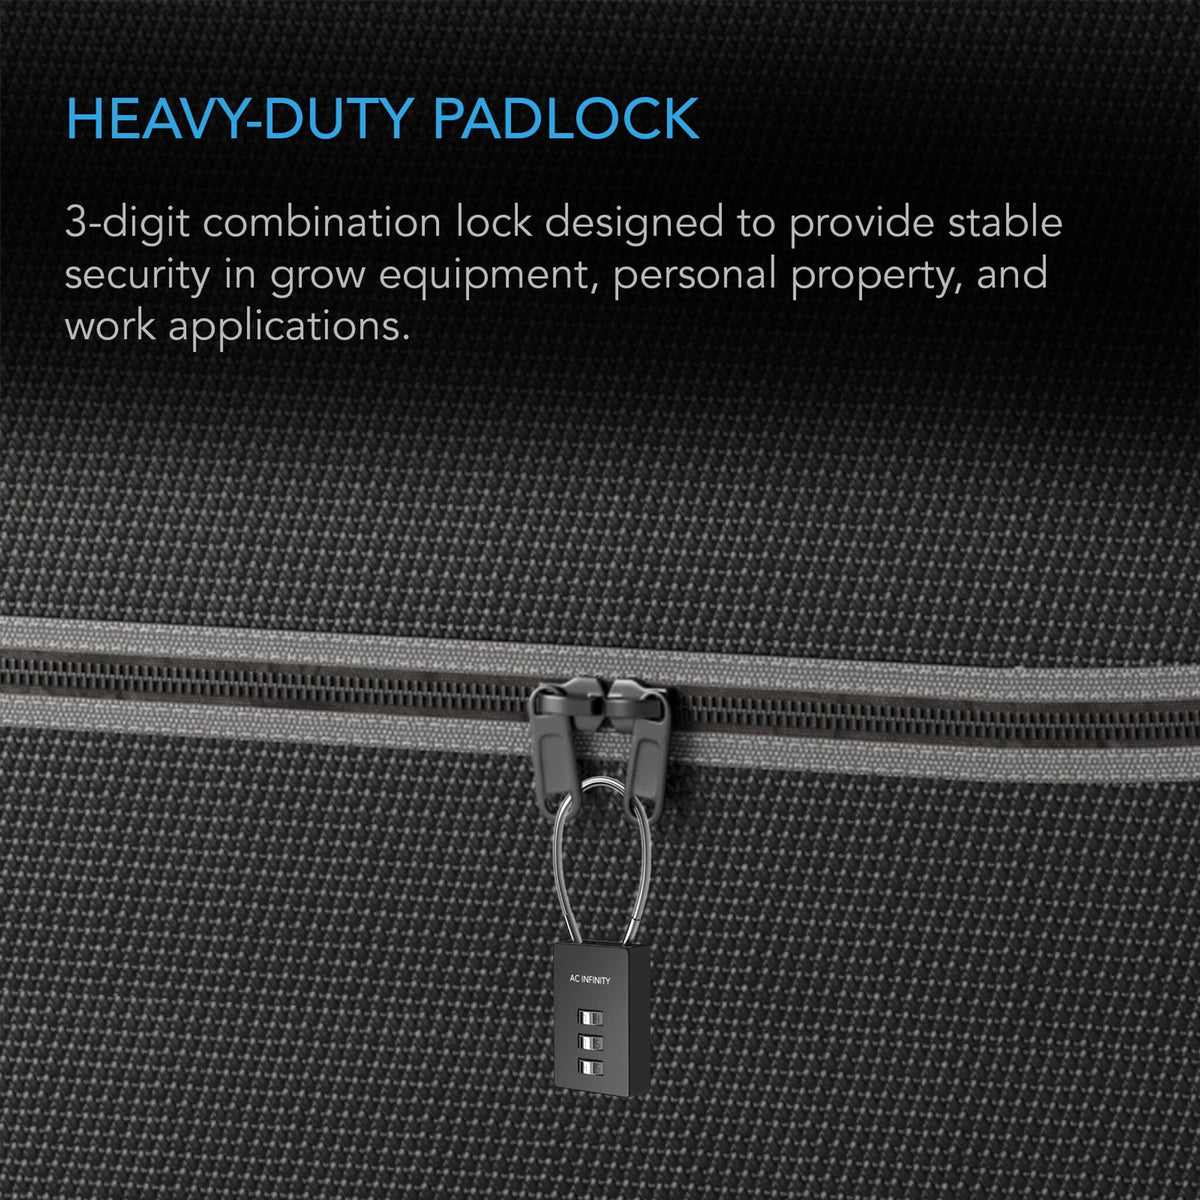 Heavy-duty pad lock